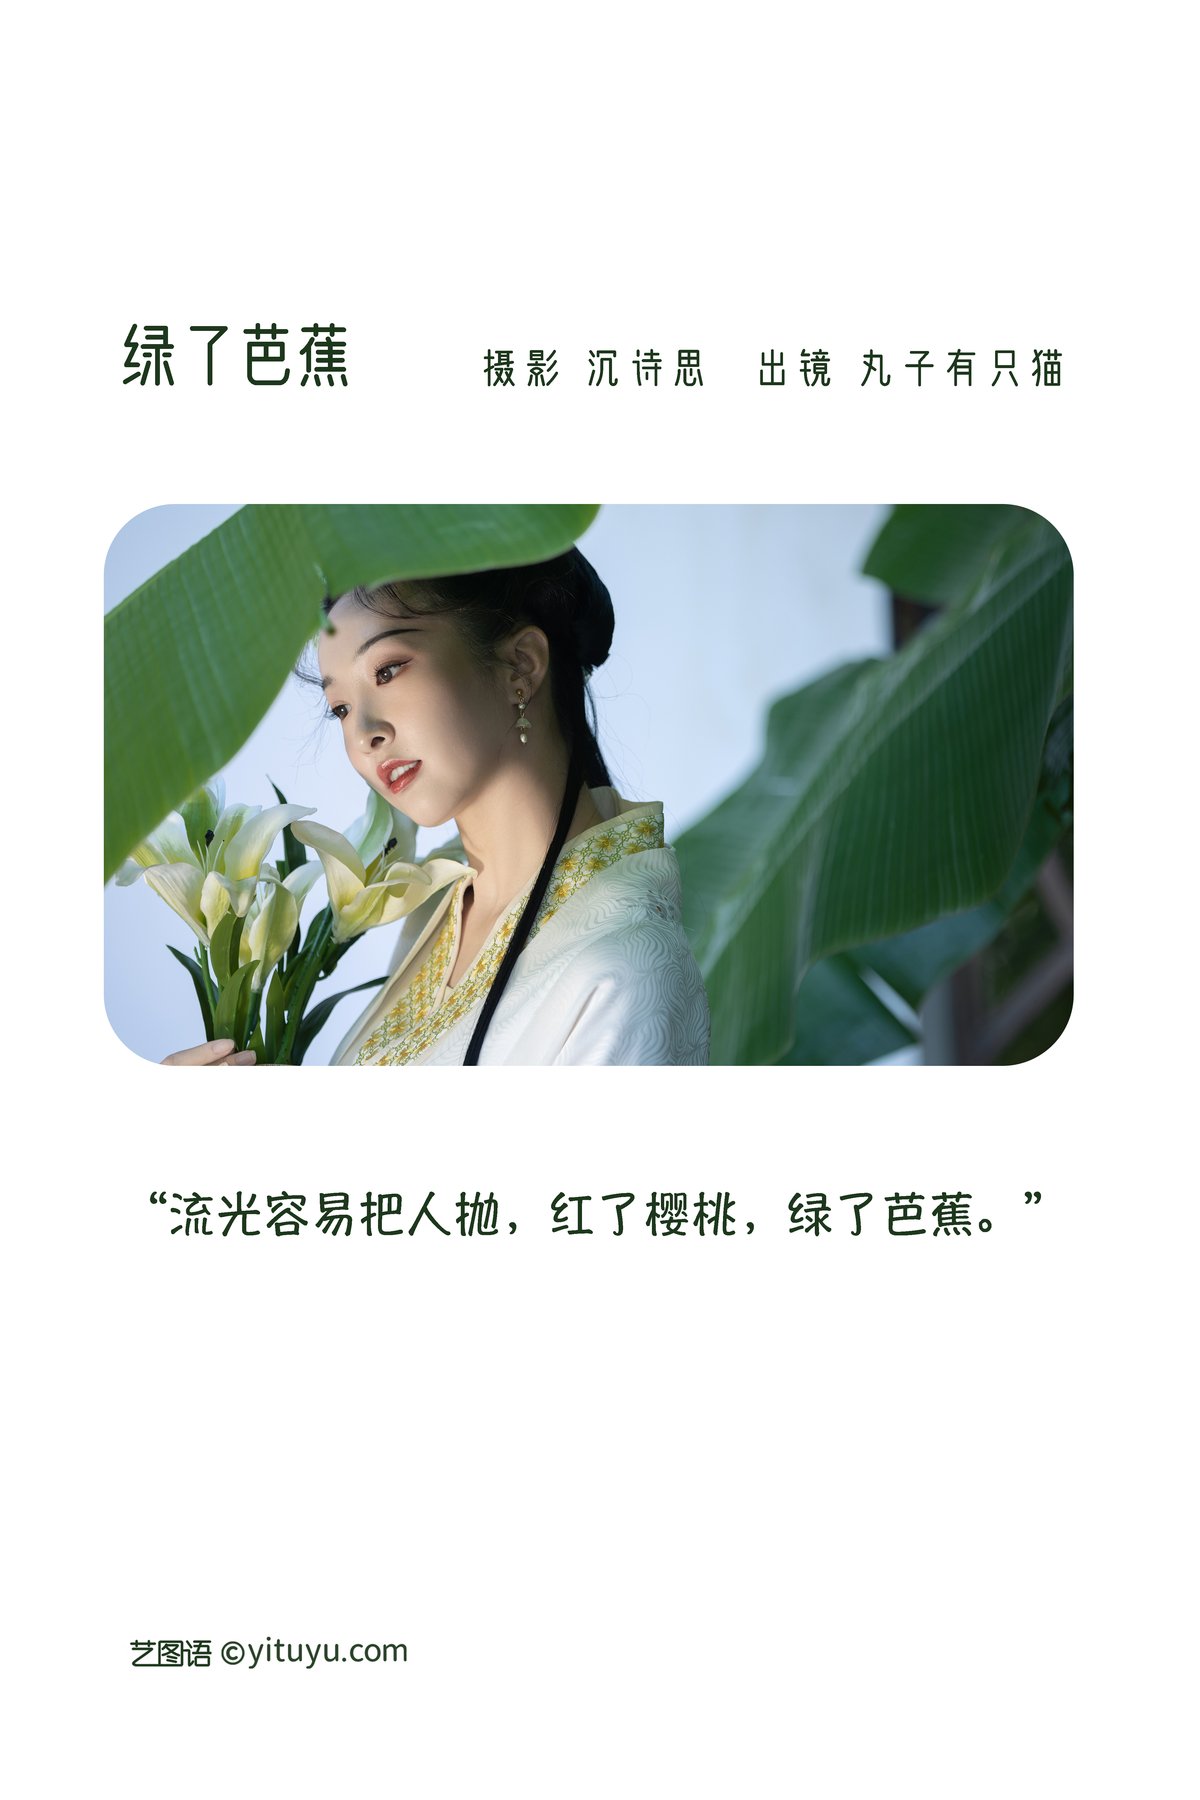 YiTuYu艺图语 Vol 2996 Wan Zi You Zhi Mao 0001 3684144379.jpg